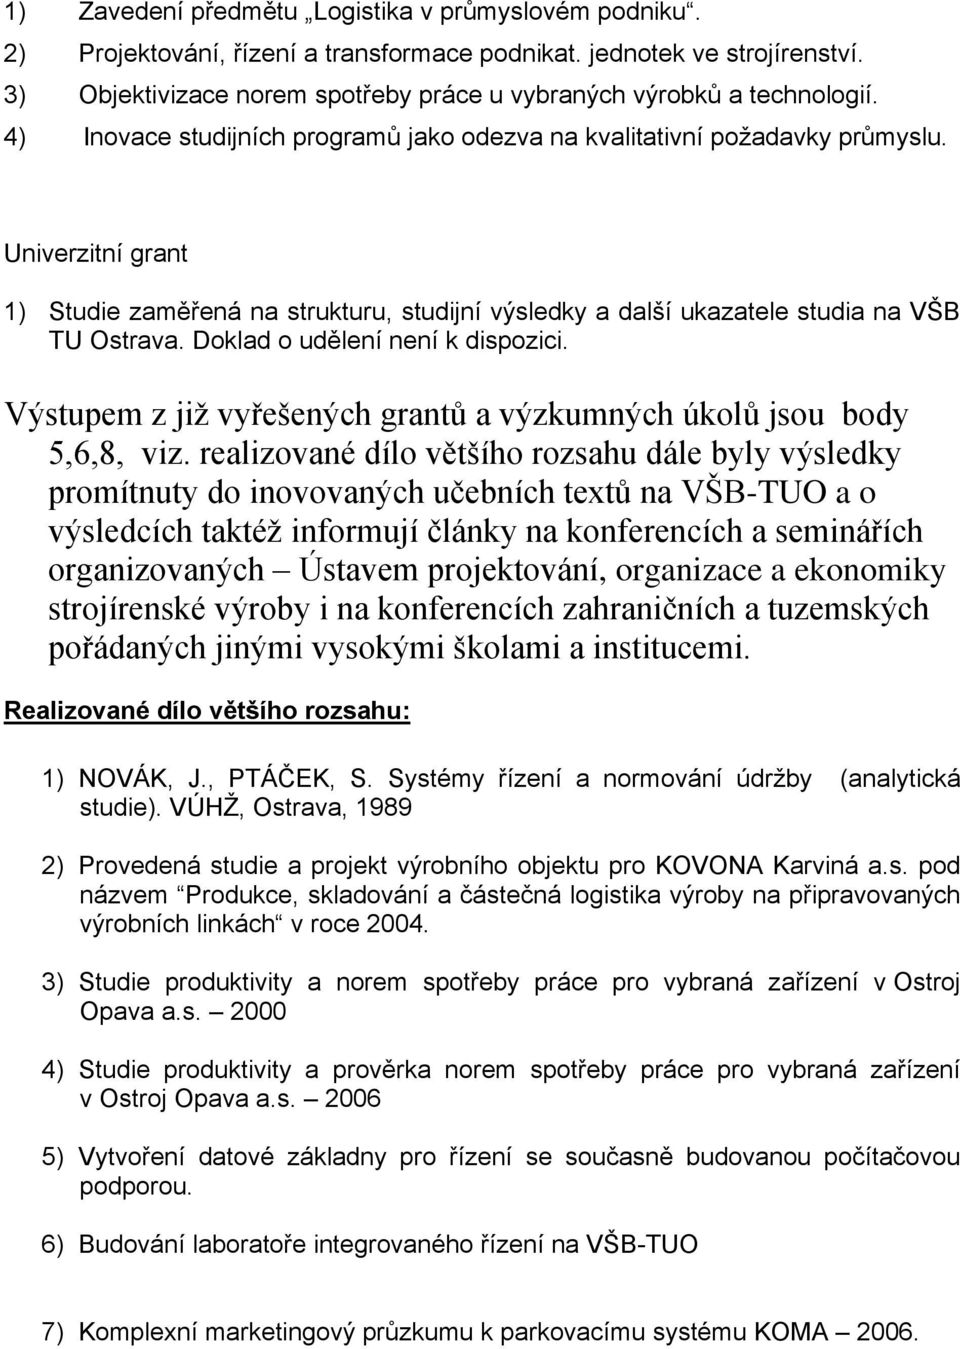 Univerzitní grant 1) Studie zaměřená na strukturu, studijní výsledky a další ukazatele studia na VŠB TU Ostrava. Doklad o udělení není k dispozici.